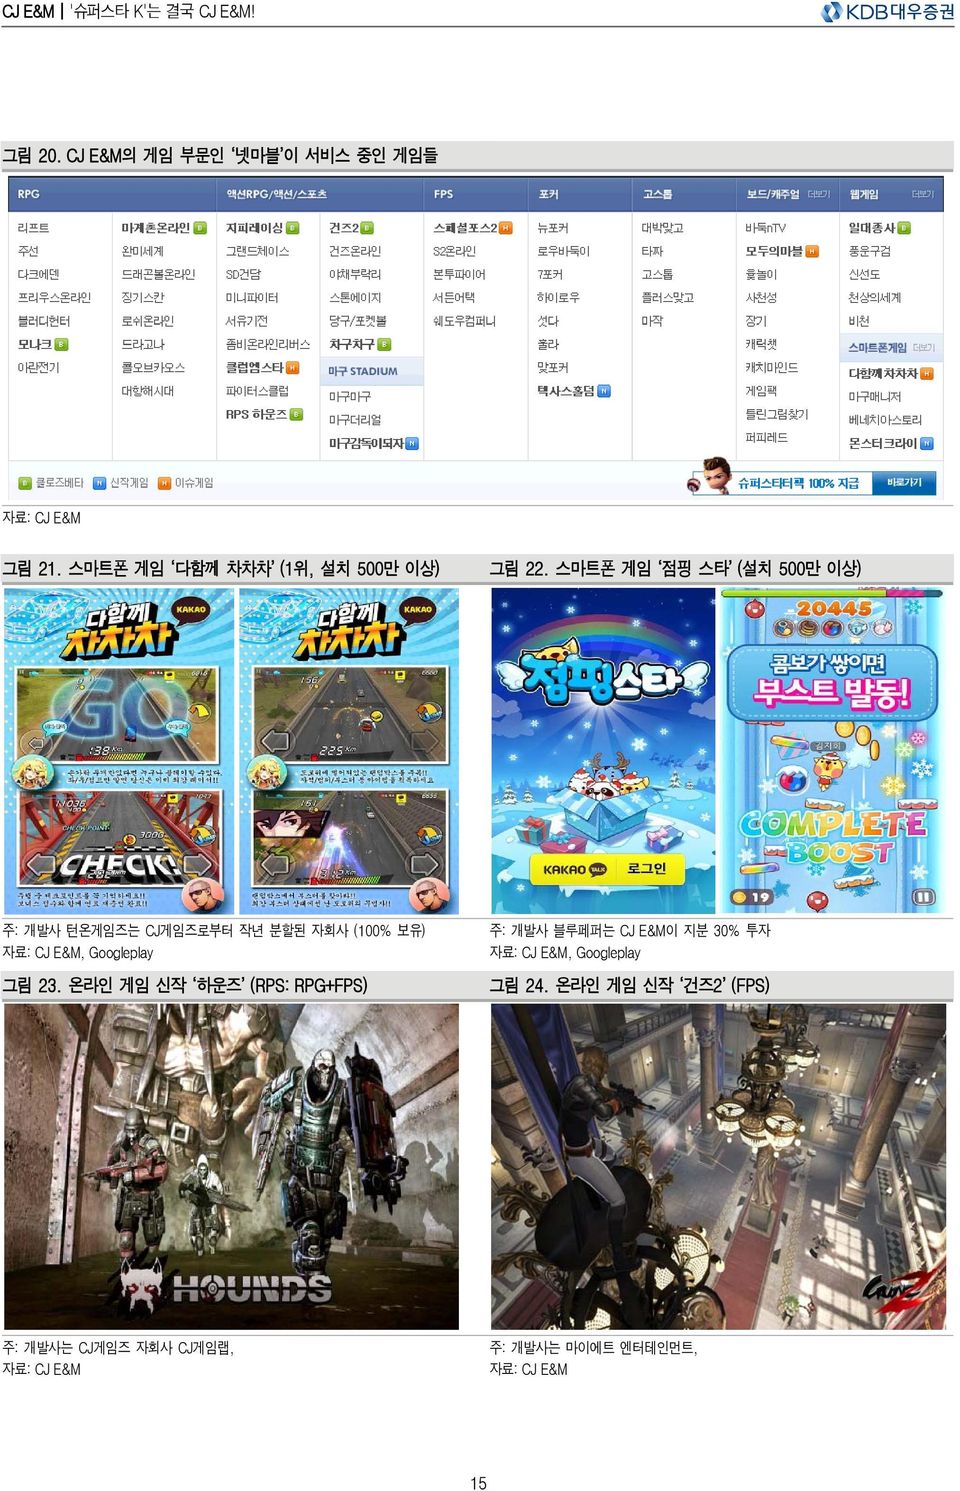 스마트폰 게임 점핑 스타 (설치 5만 이상) 주: 개발사 턴온게임즈는 CJ게임즈로부터 작년 분할된 자회사 ( 보유) 자료: CJ E&M, Googleplay 그림